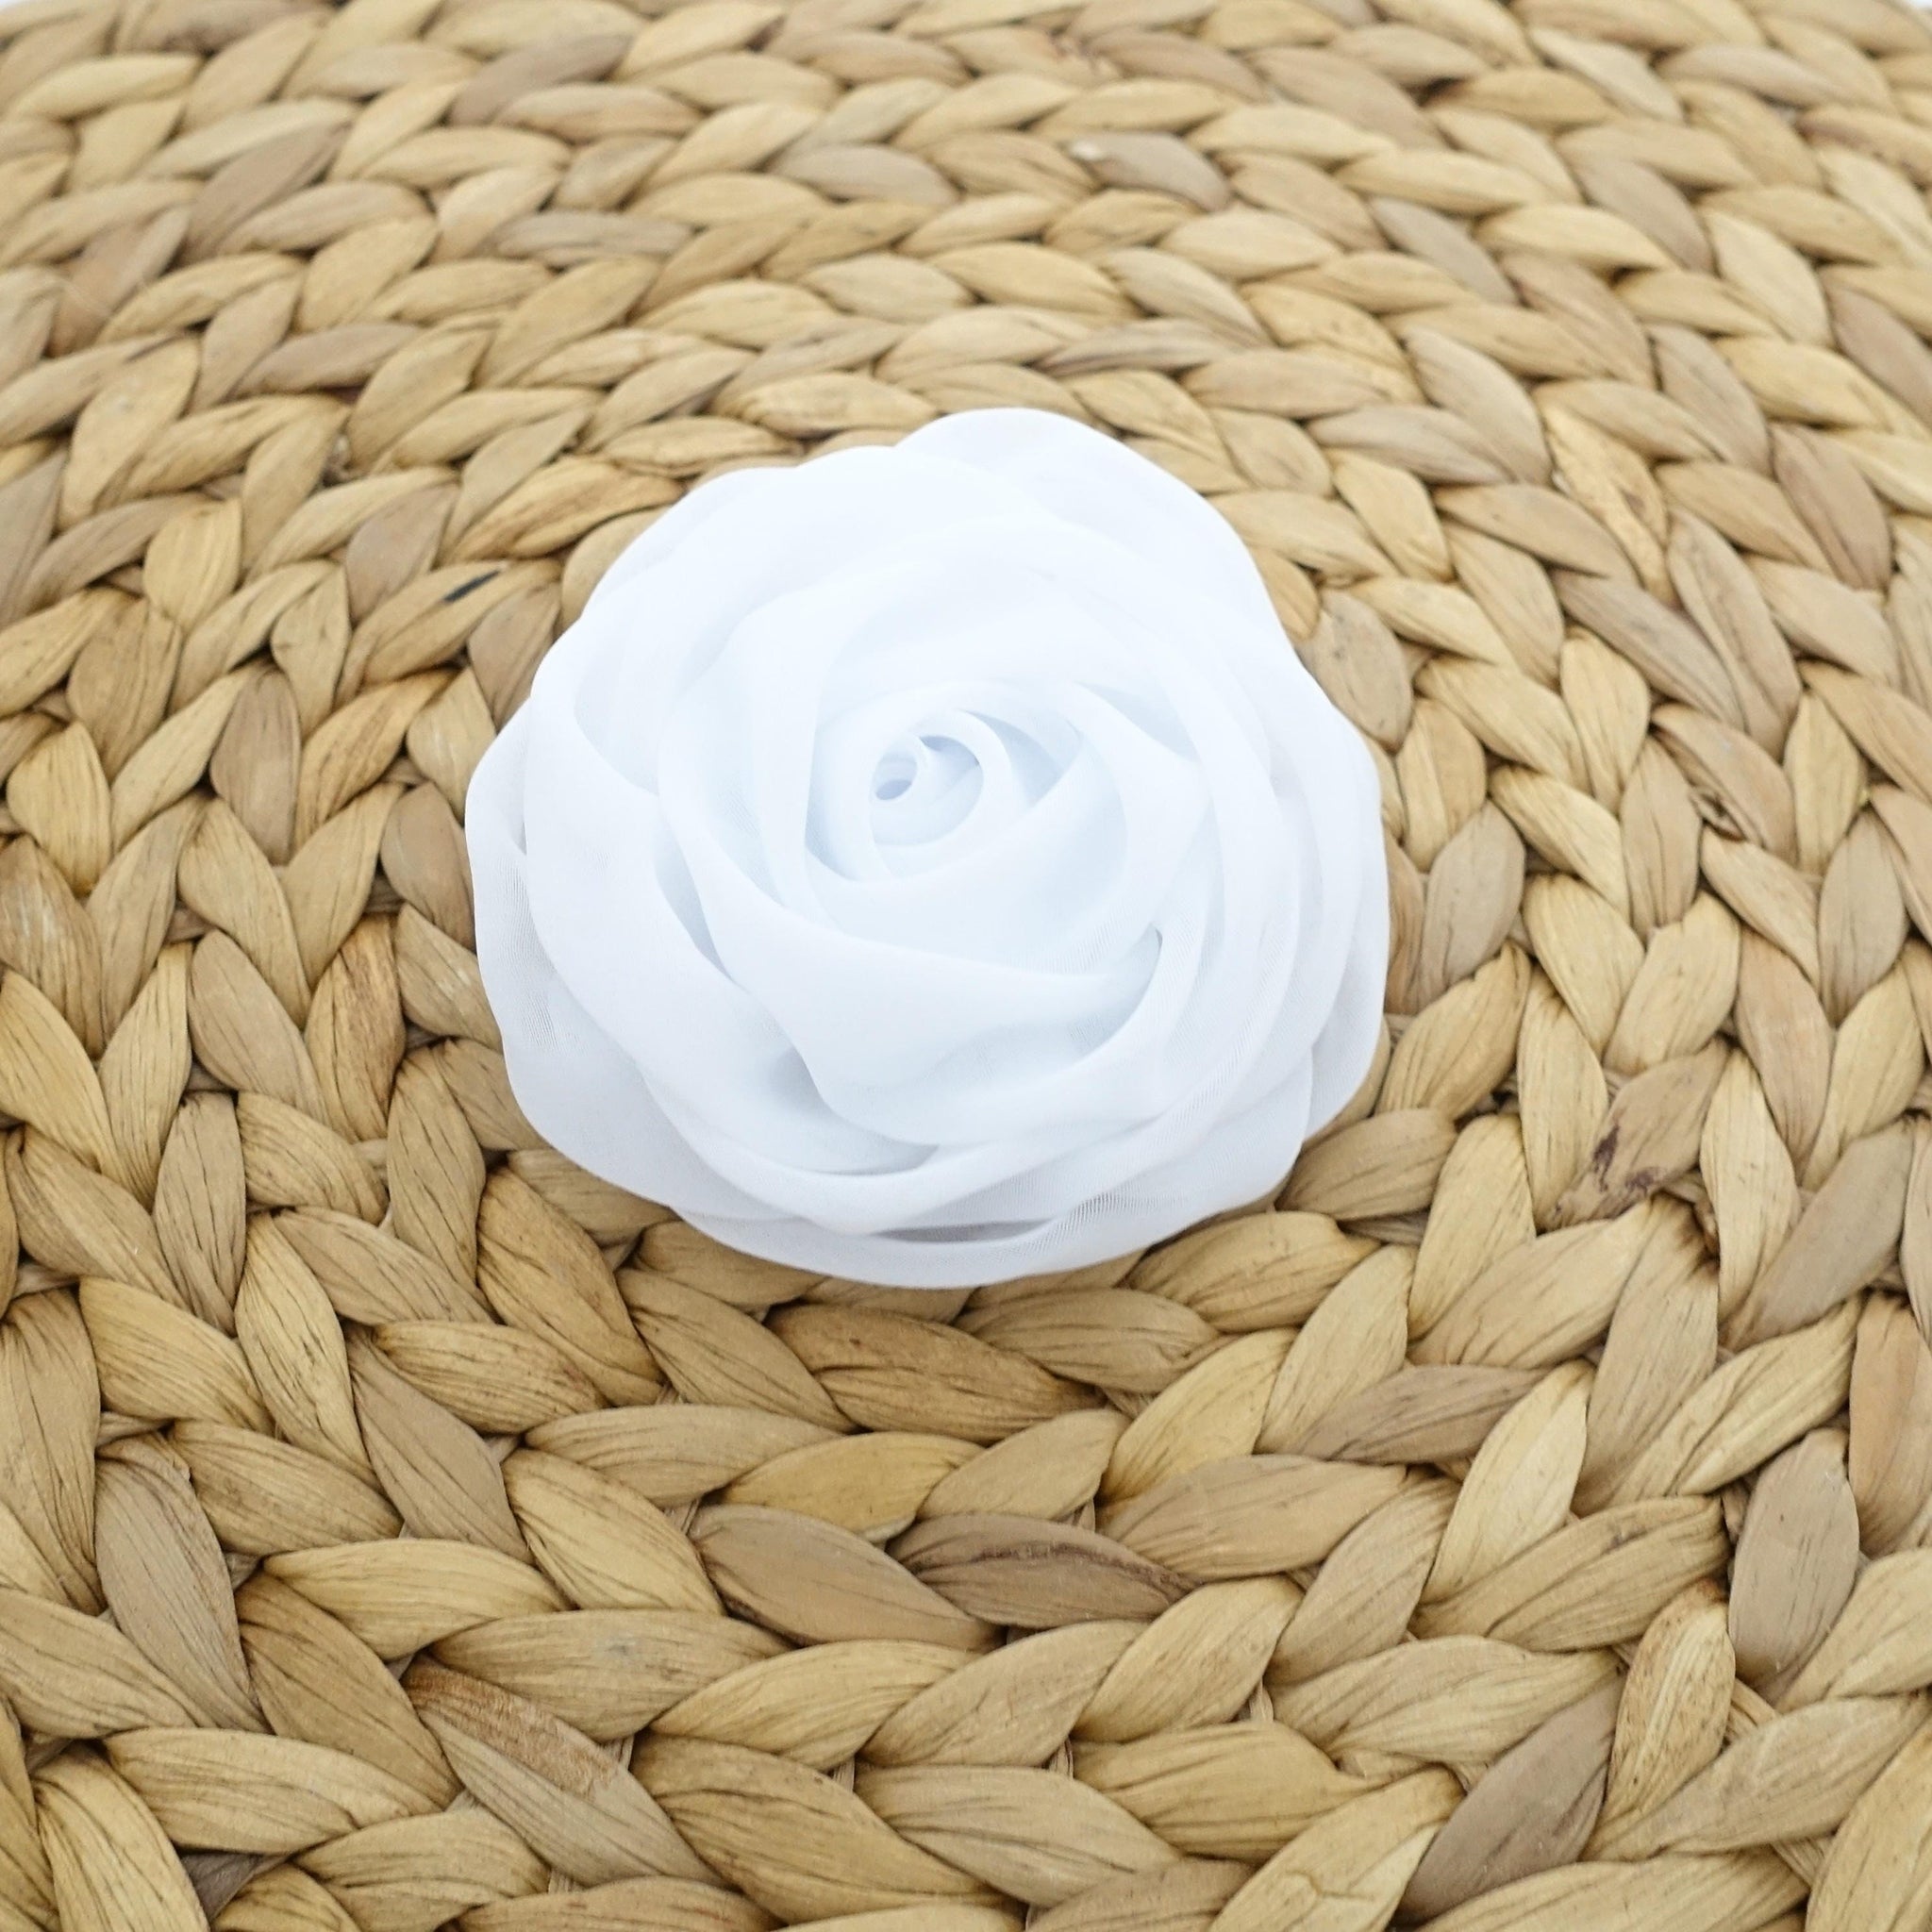 VeryShine 3.54 / Chiffon White Rose Flower Hair Clip Women Flower Corsage Brooch Accessories